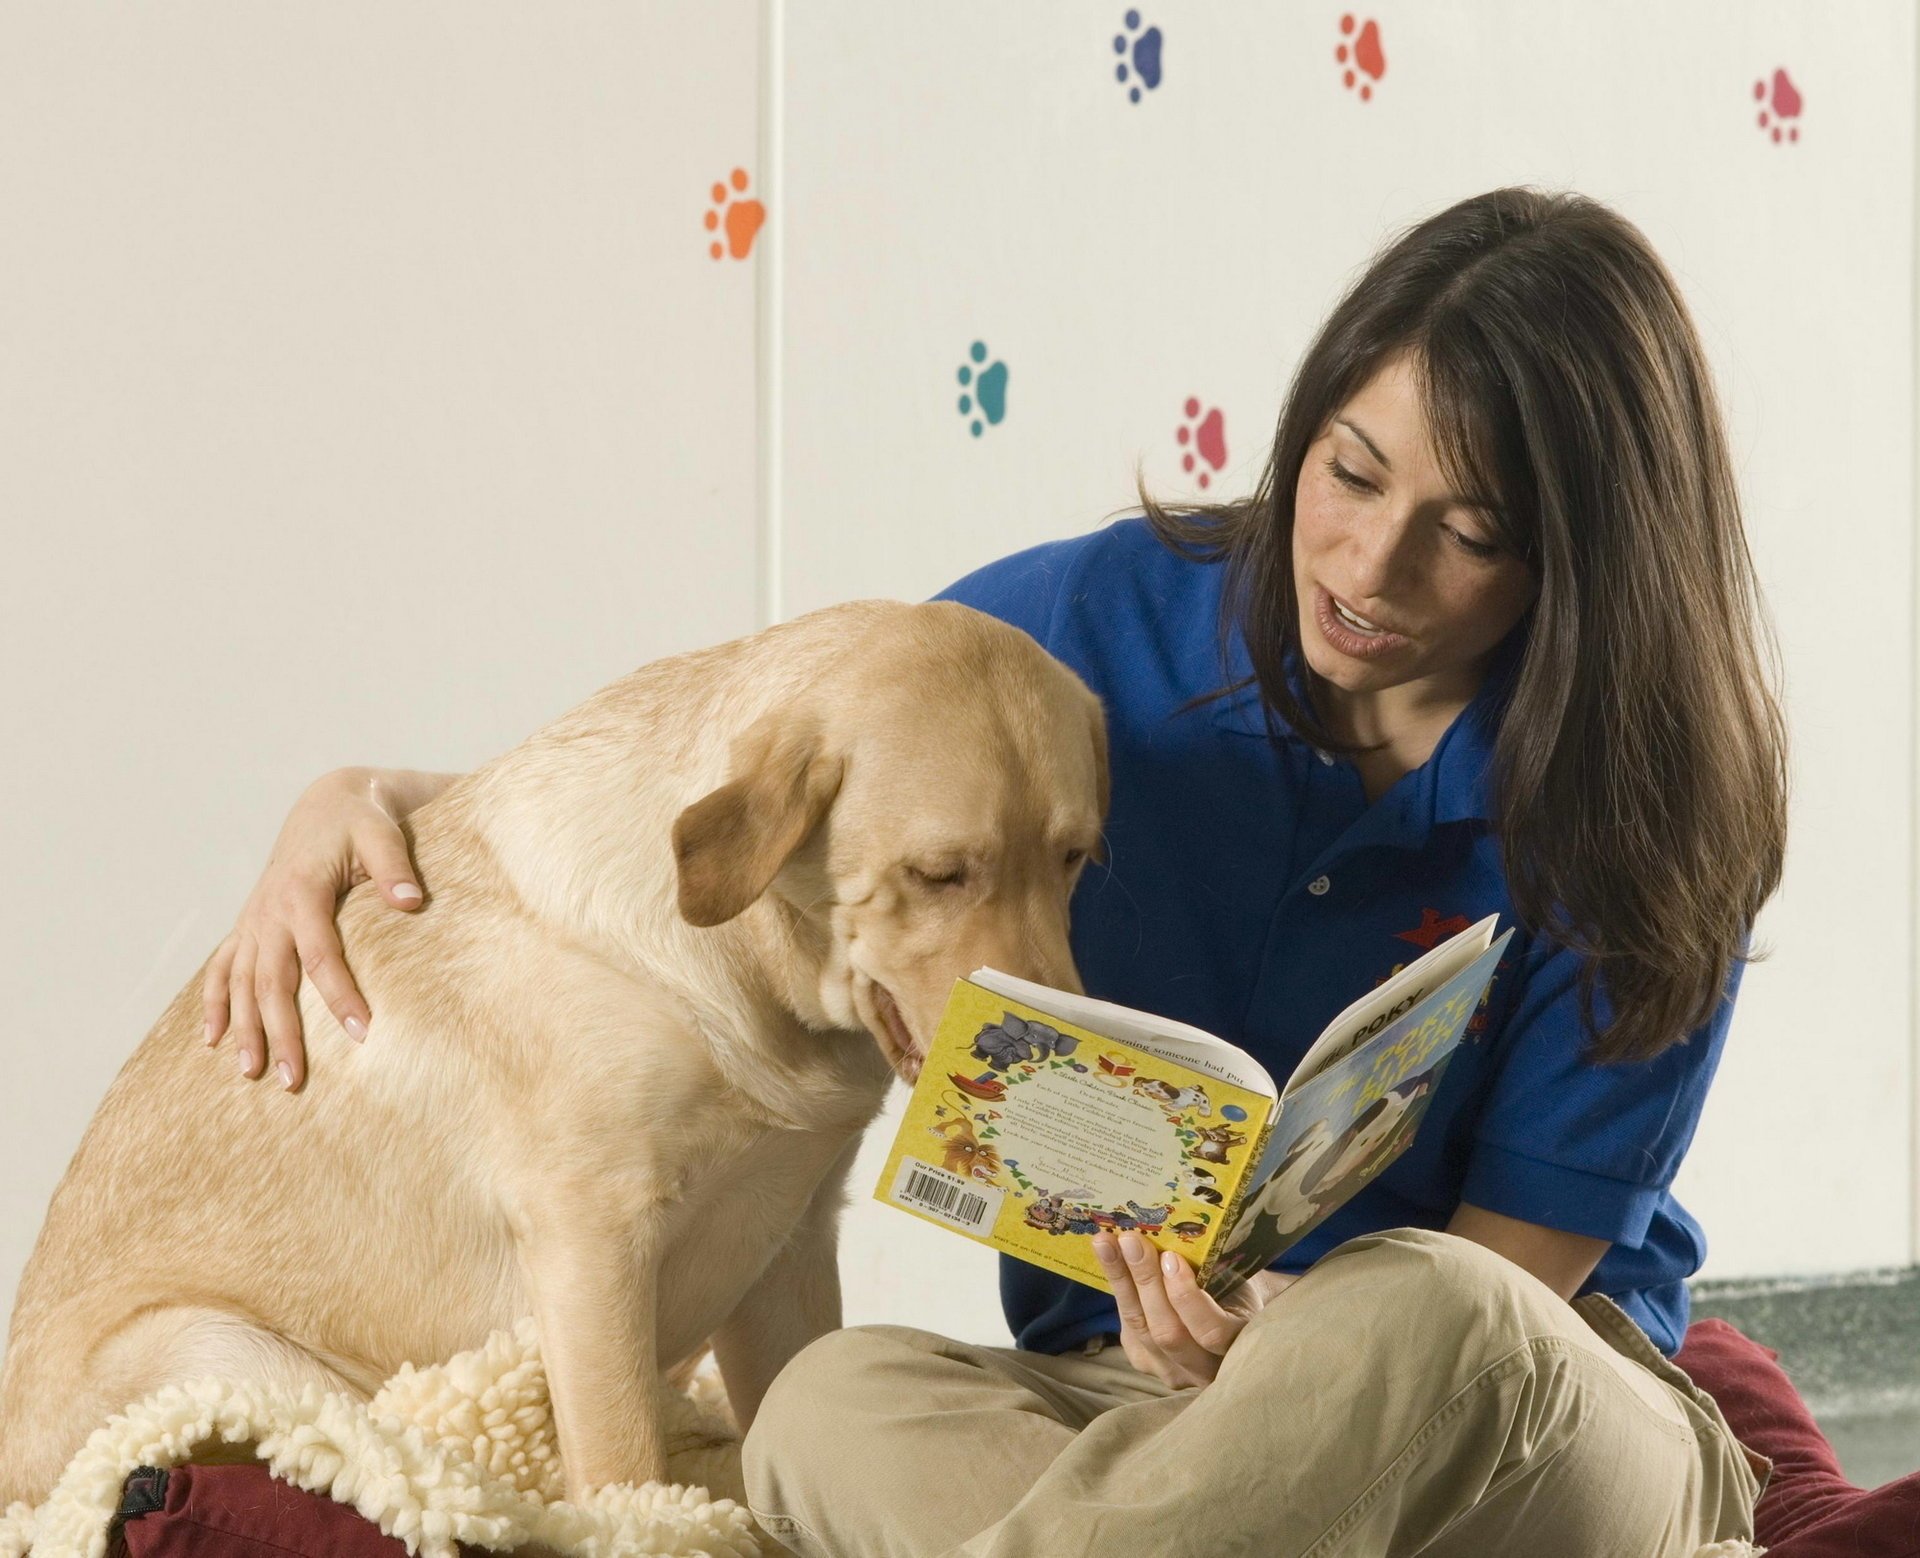 Kind pets. Книги про собак. Собака с хозяйкой. Чтение с собакой. Девочка с собакой на книжке.